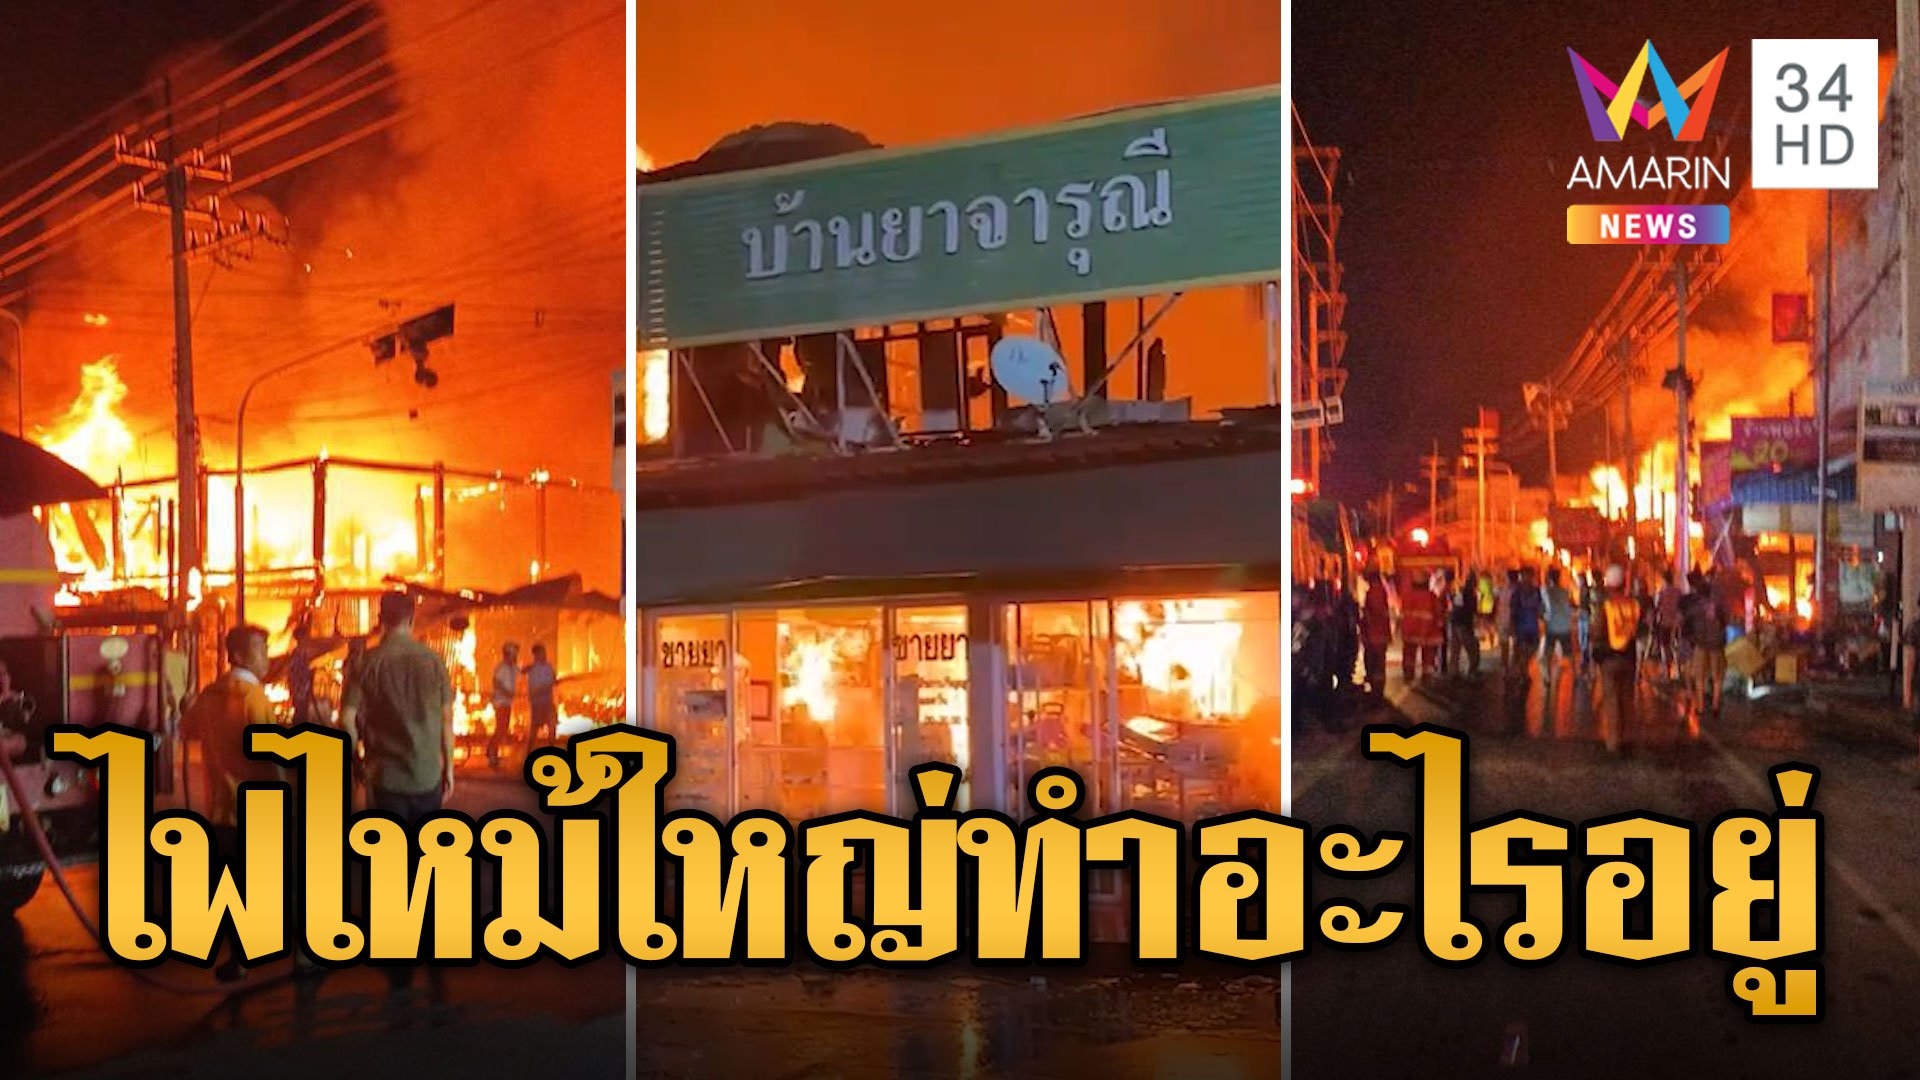 ชาวบ้านโวย! ไฟไหม้ตลาดใหญ่ เทศบาลทำอะไรอยู่ | ข่าวเที่ยงอมรินทร์ | 17 เม.ย. 67 | AMARIN TVHD34